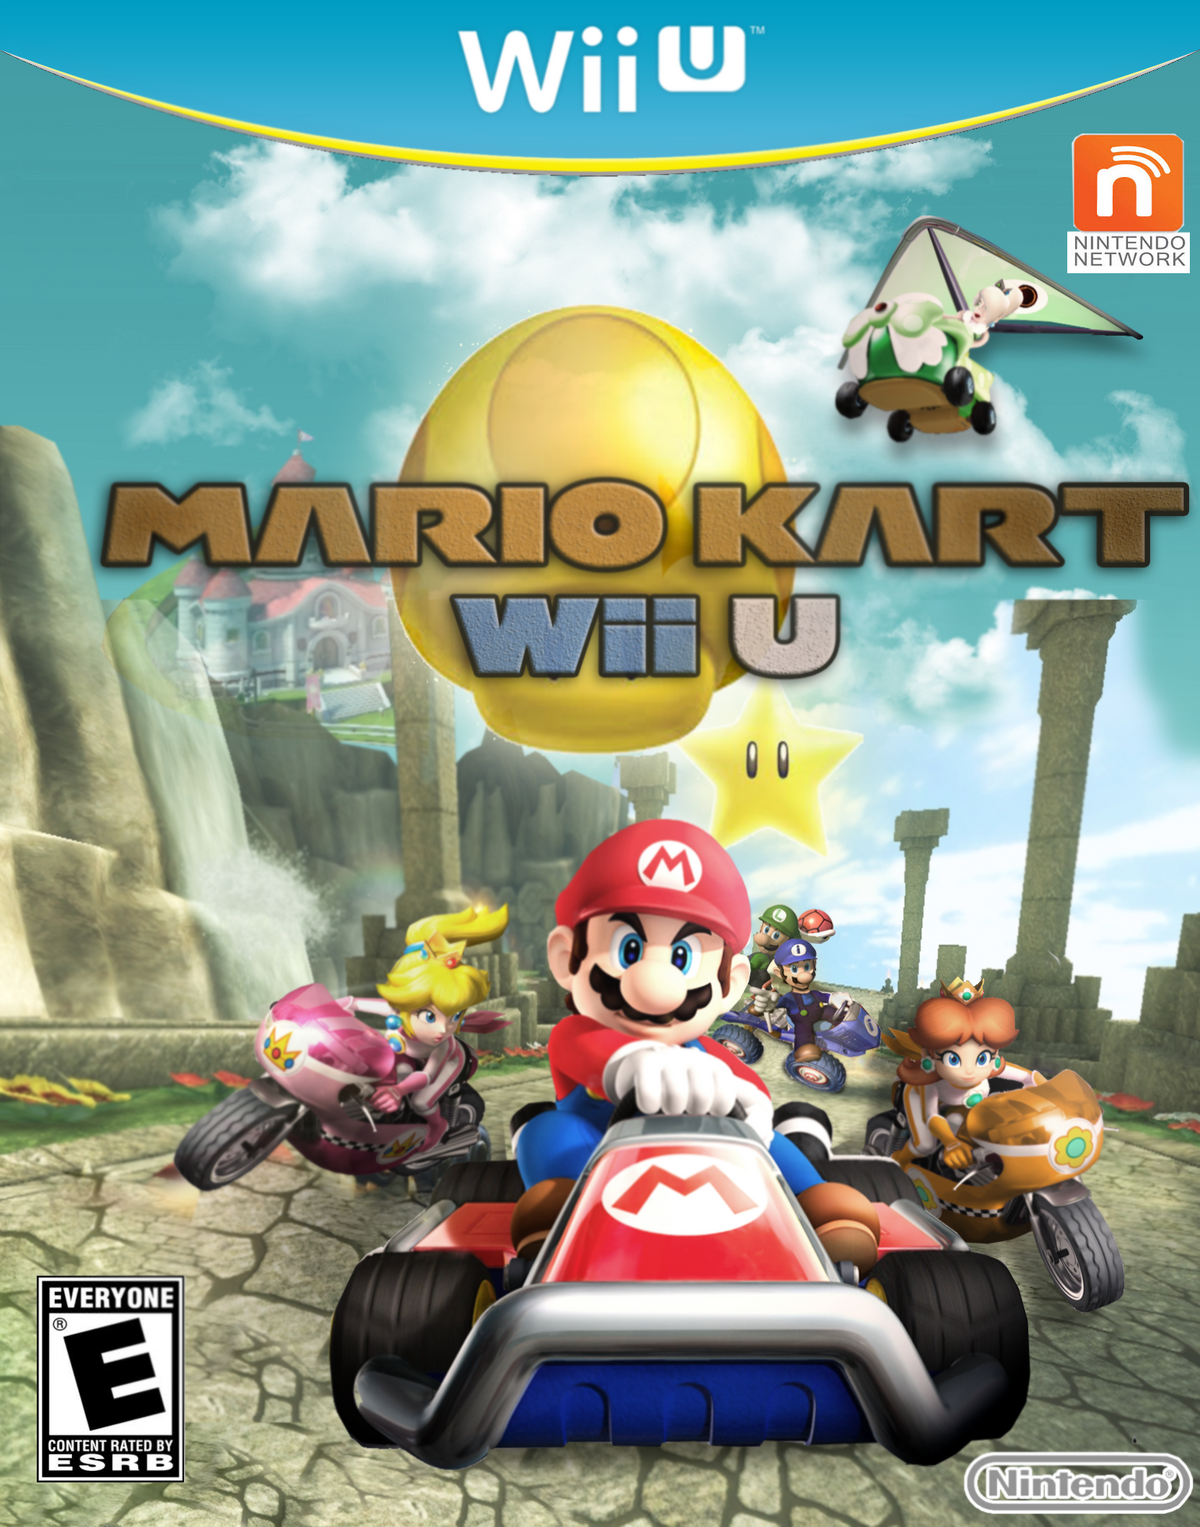 Mario Kart Wii U Fantendo Game Ideas And More Fandom 0960